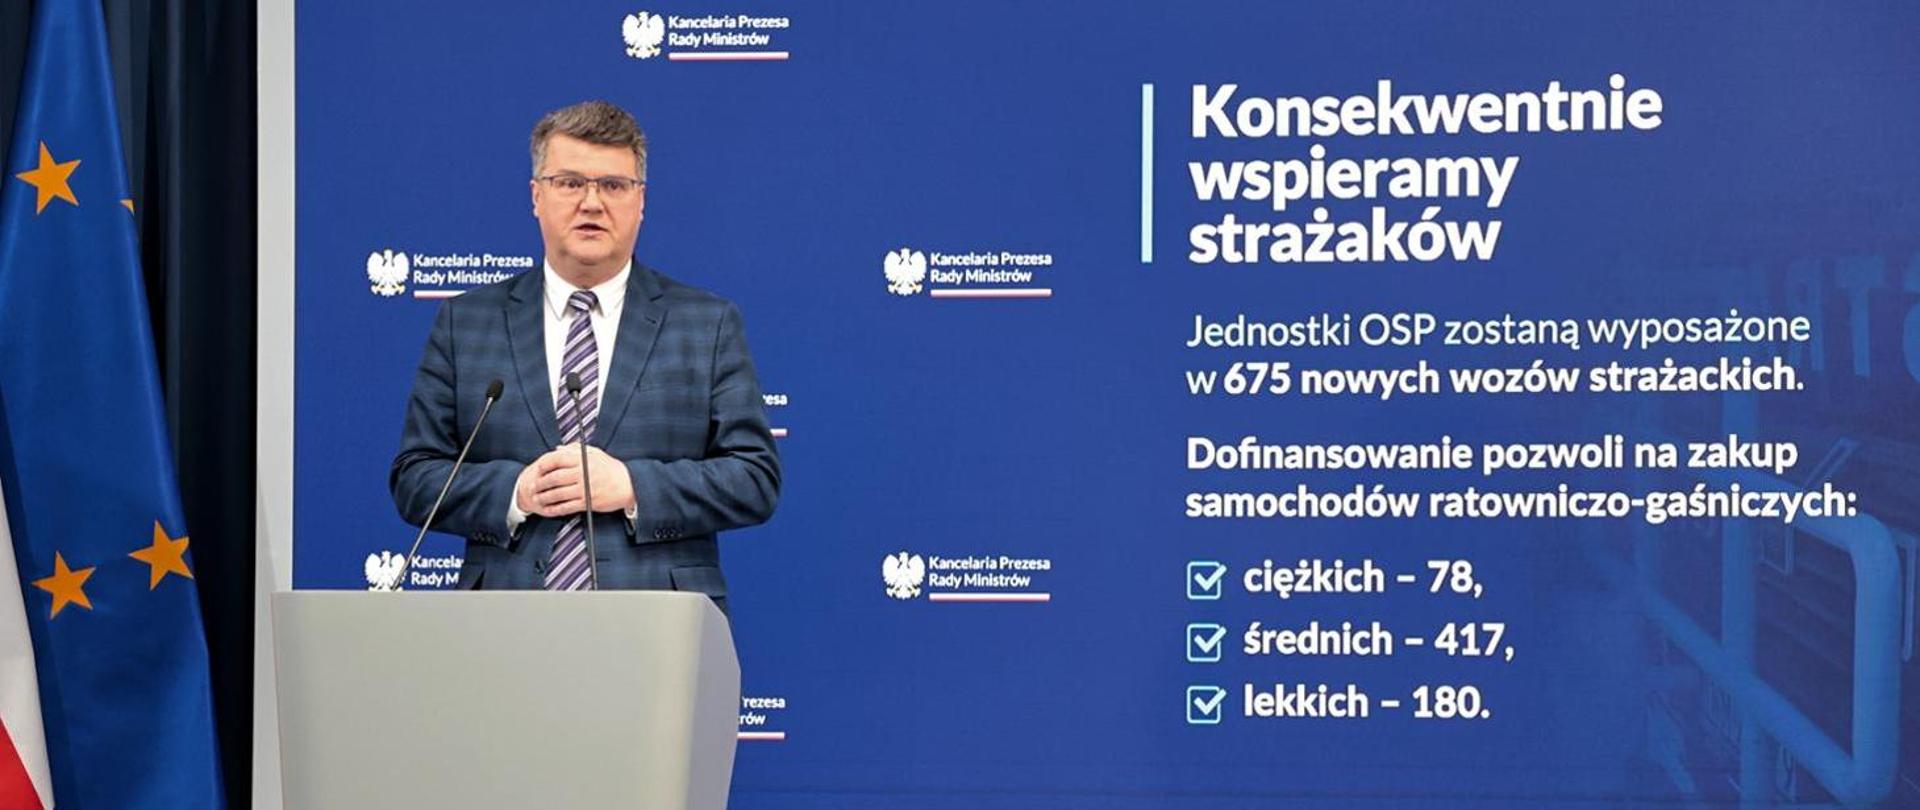 Wiceminister Maciej Wąsik na tle baneru "Konsekwentnie wspieramy strażaków".